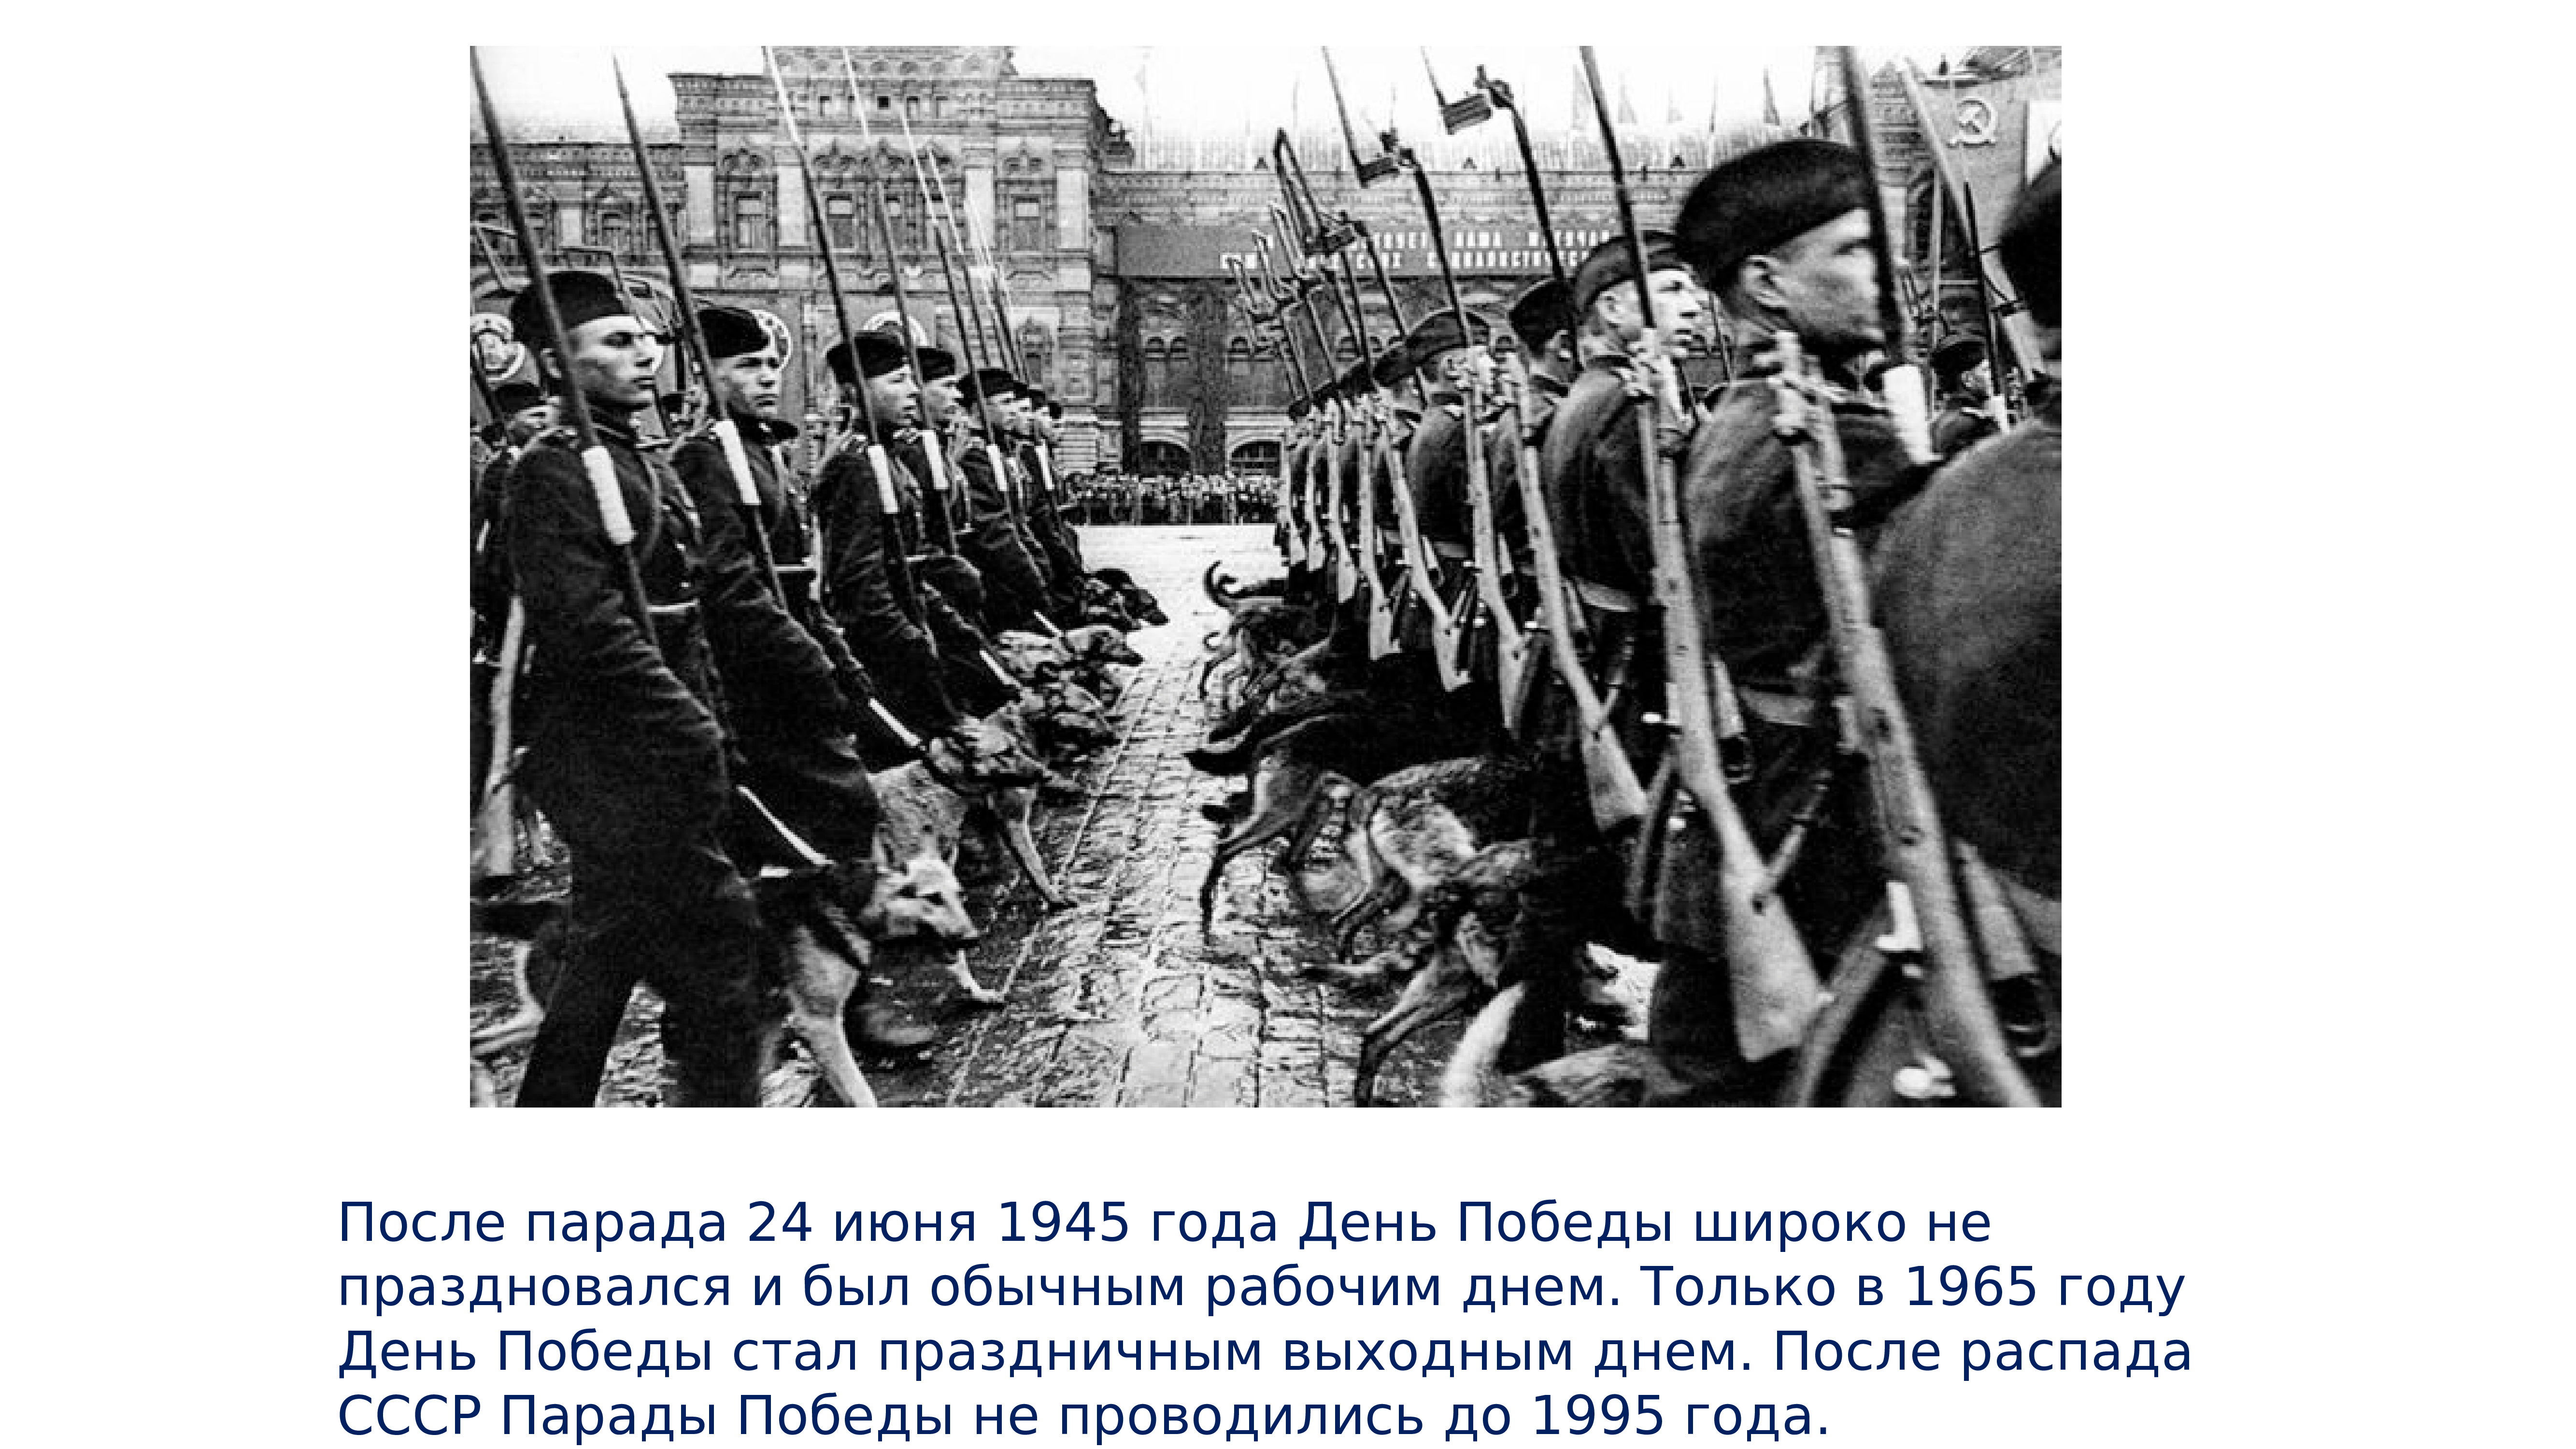 Когда 9 мая стал выходным. День парада Победы 1945 года 24 июня. 24 Мая 1945 парад Победы в Москве. Парад Победы Советский Союз 24 июня 1945. Парад Победы 24 июня 1945 года фашистские знамена.